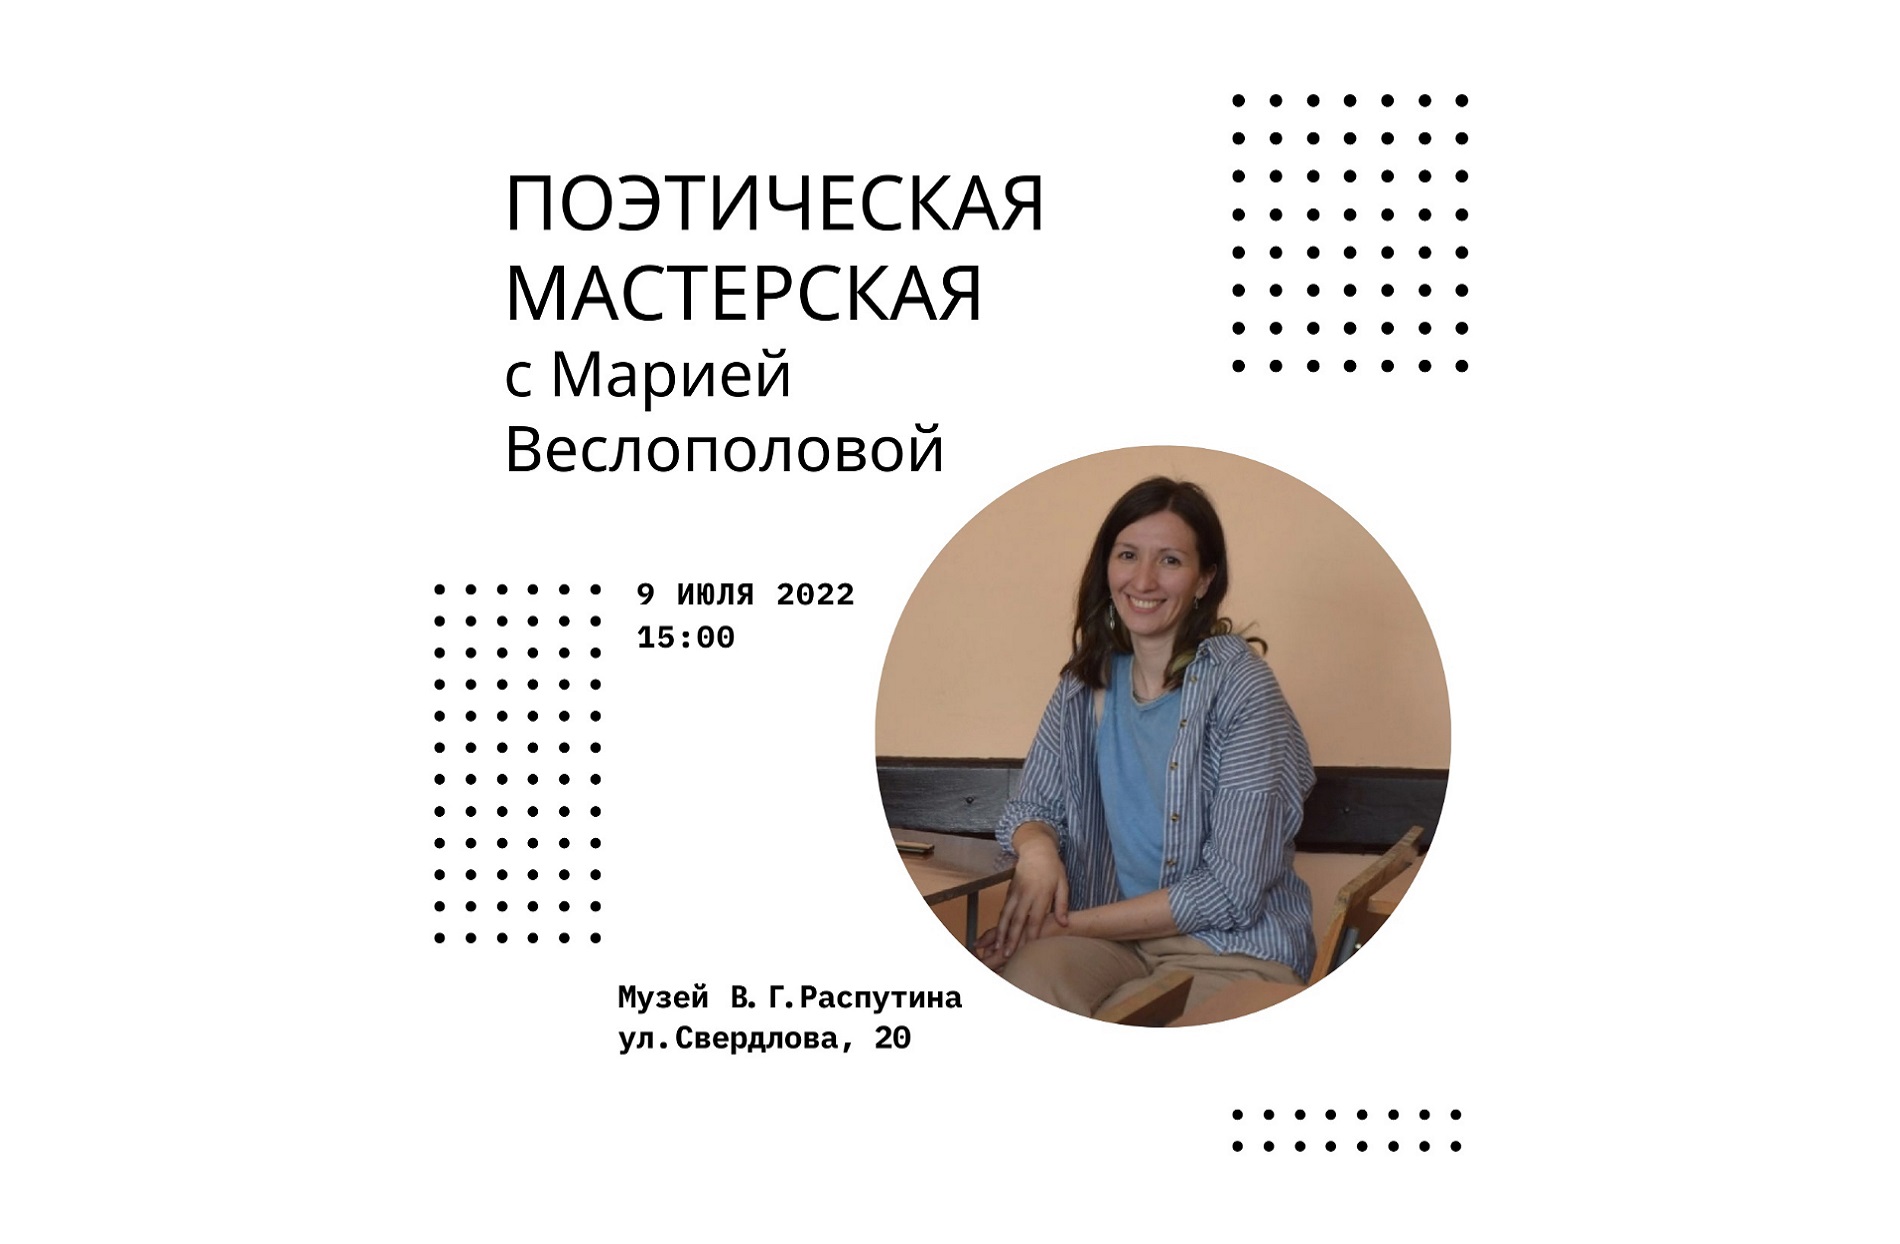 Вторая поэтическая мастерская с Марией Веслополовой  в Музее В.Г. Распутина